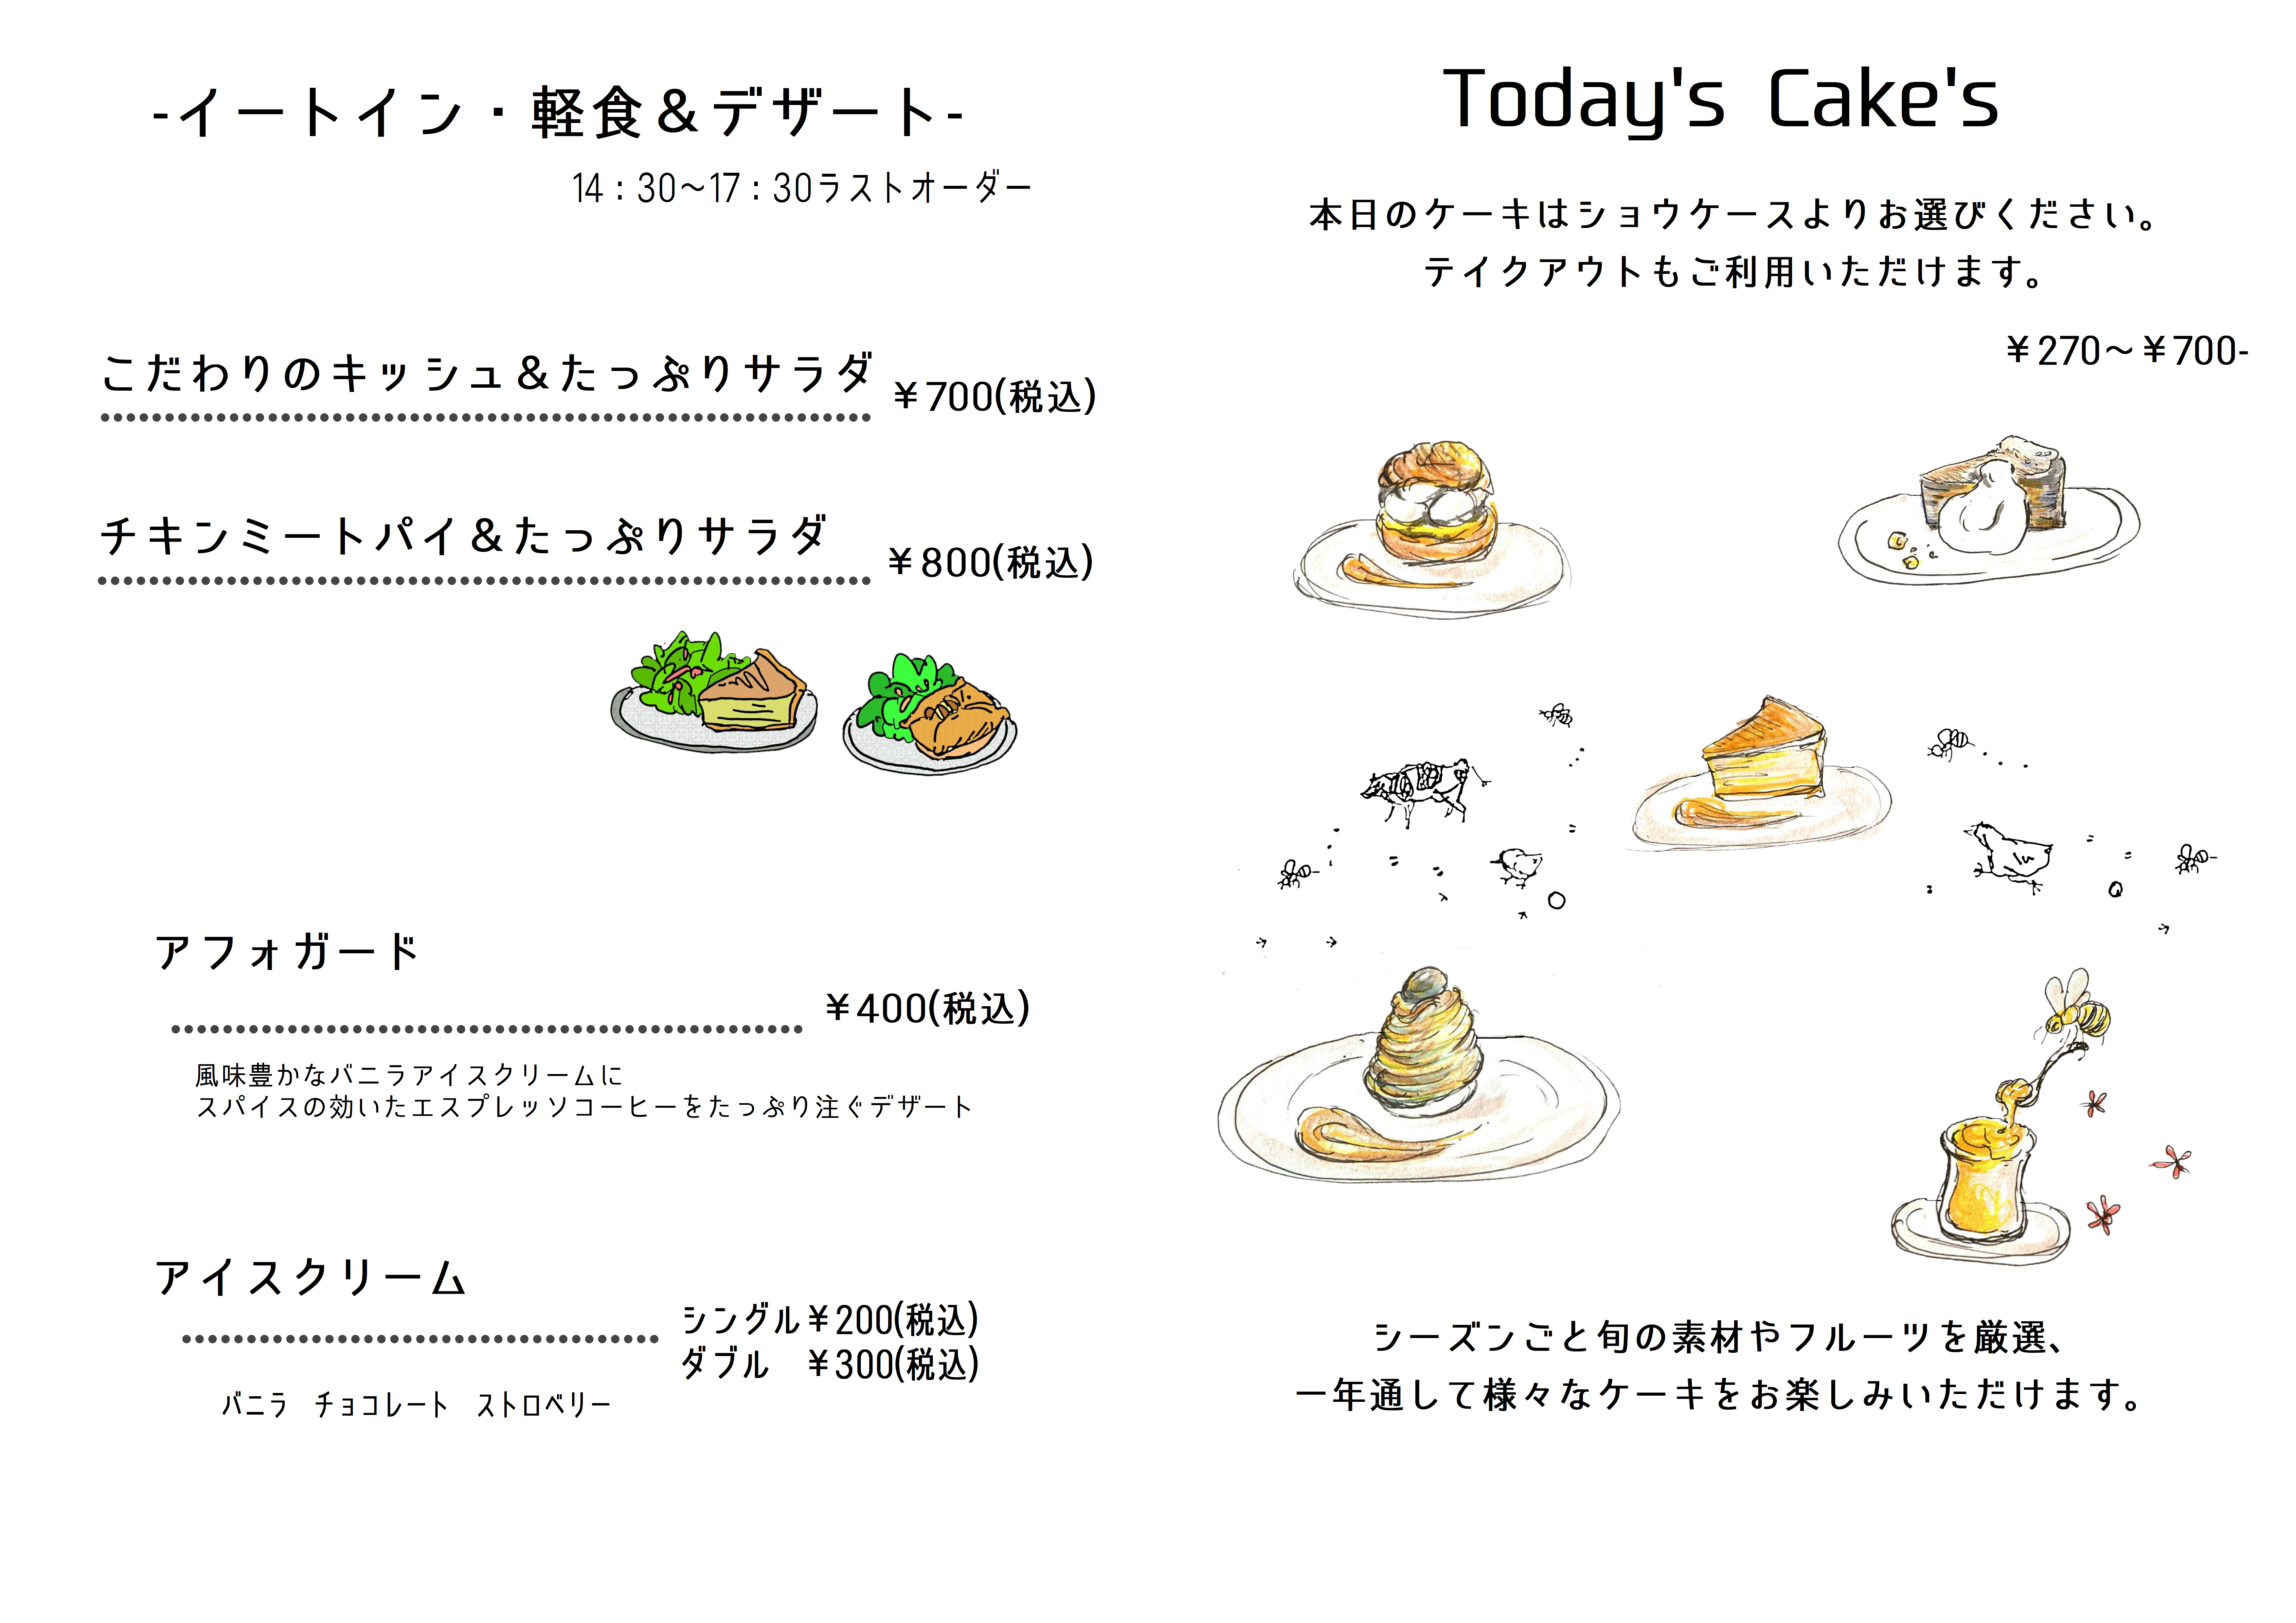 Food&Desert 14:30～18:00